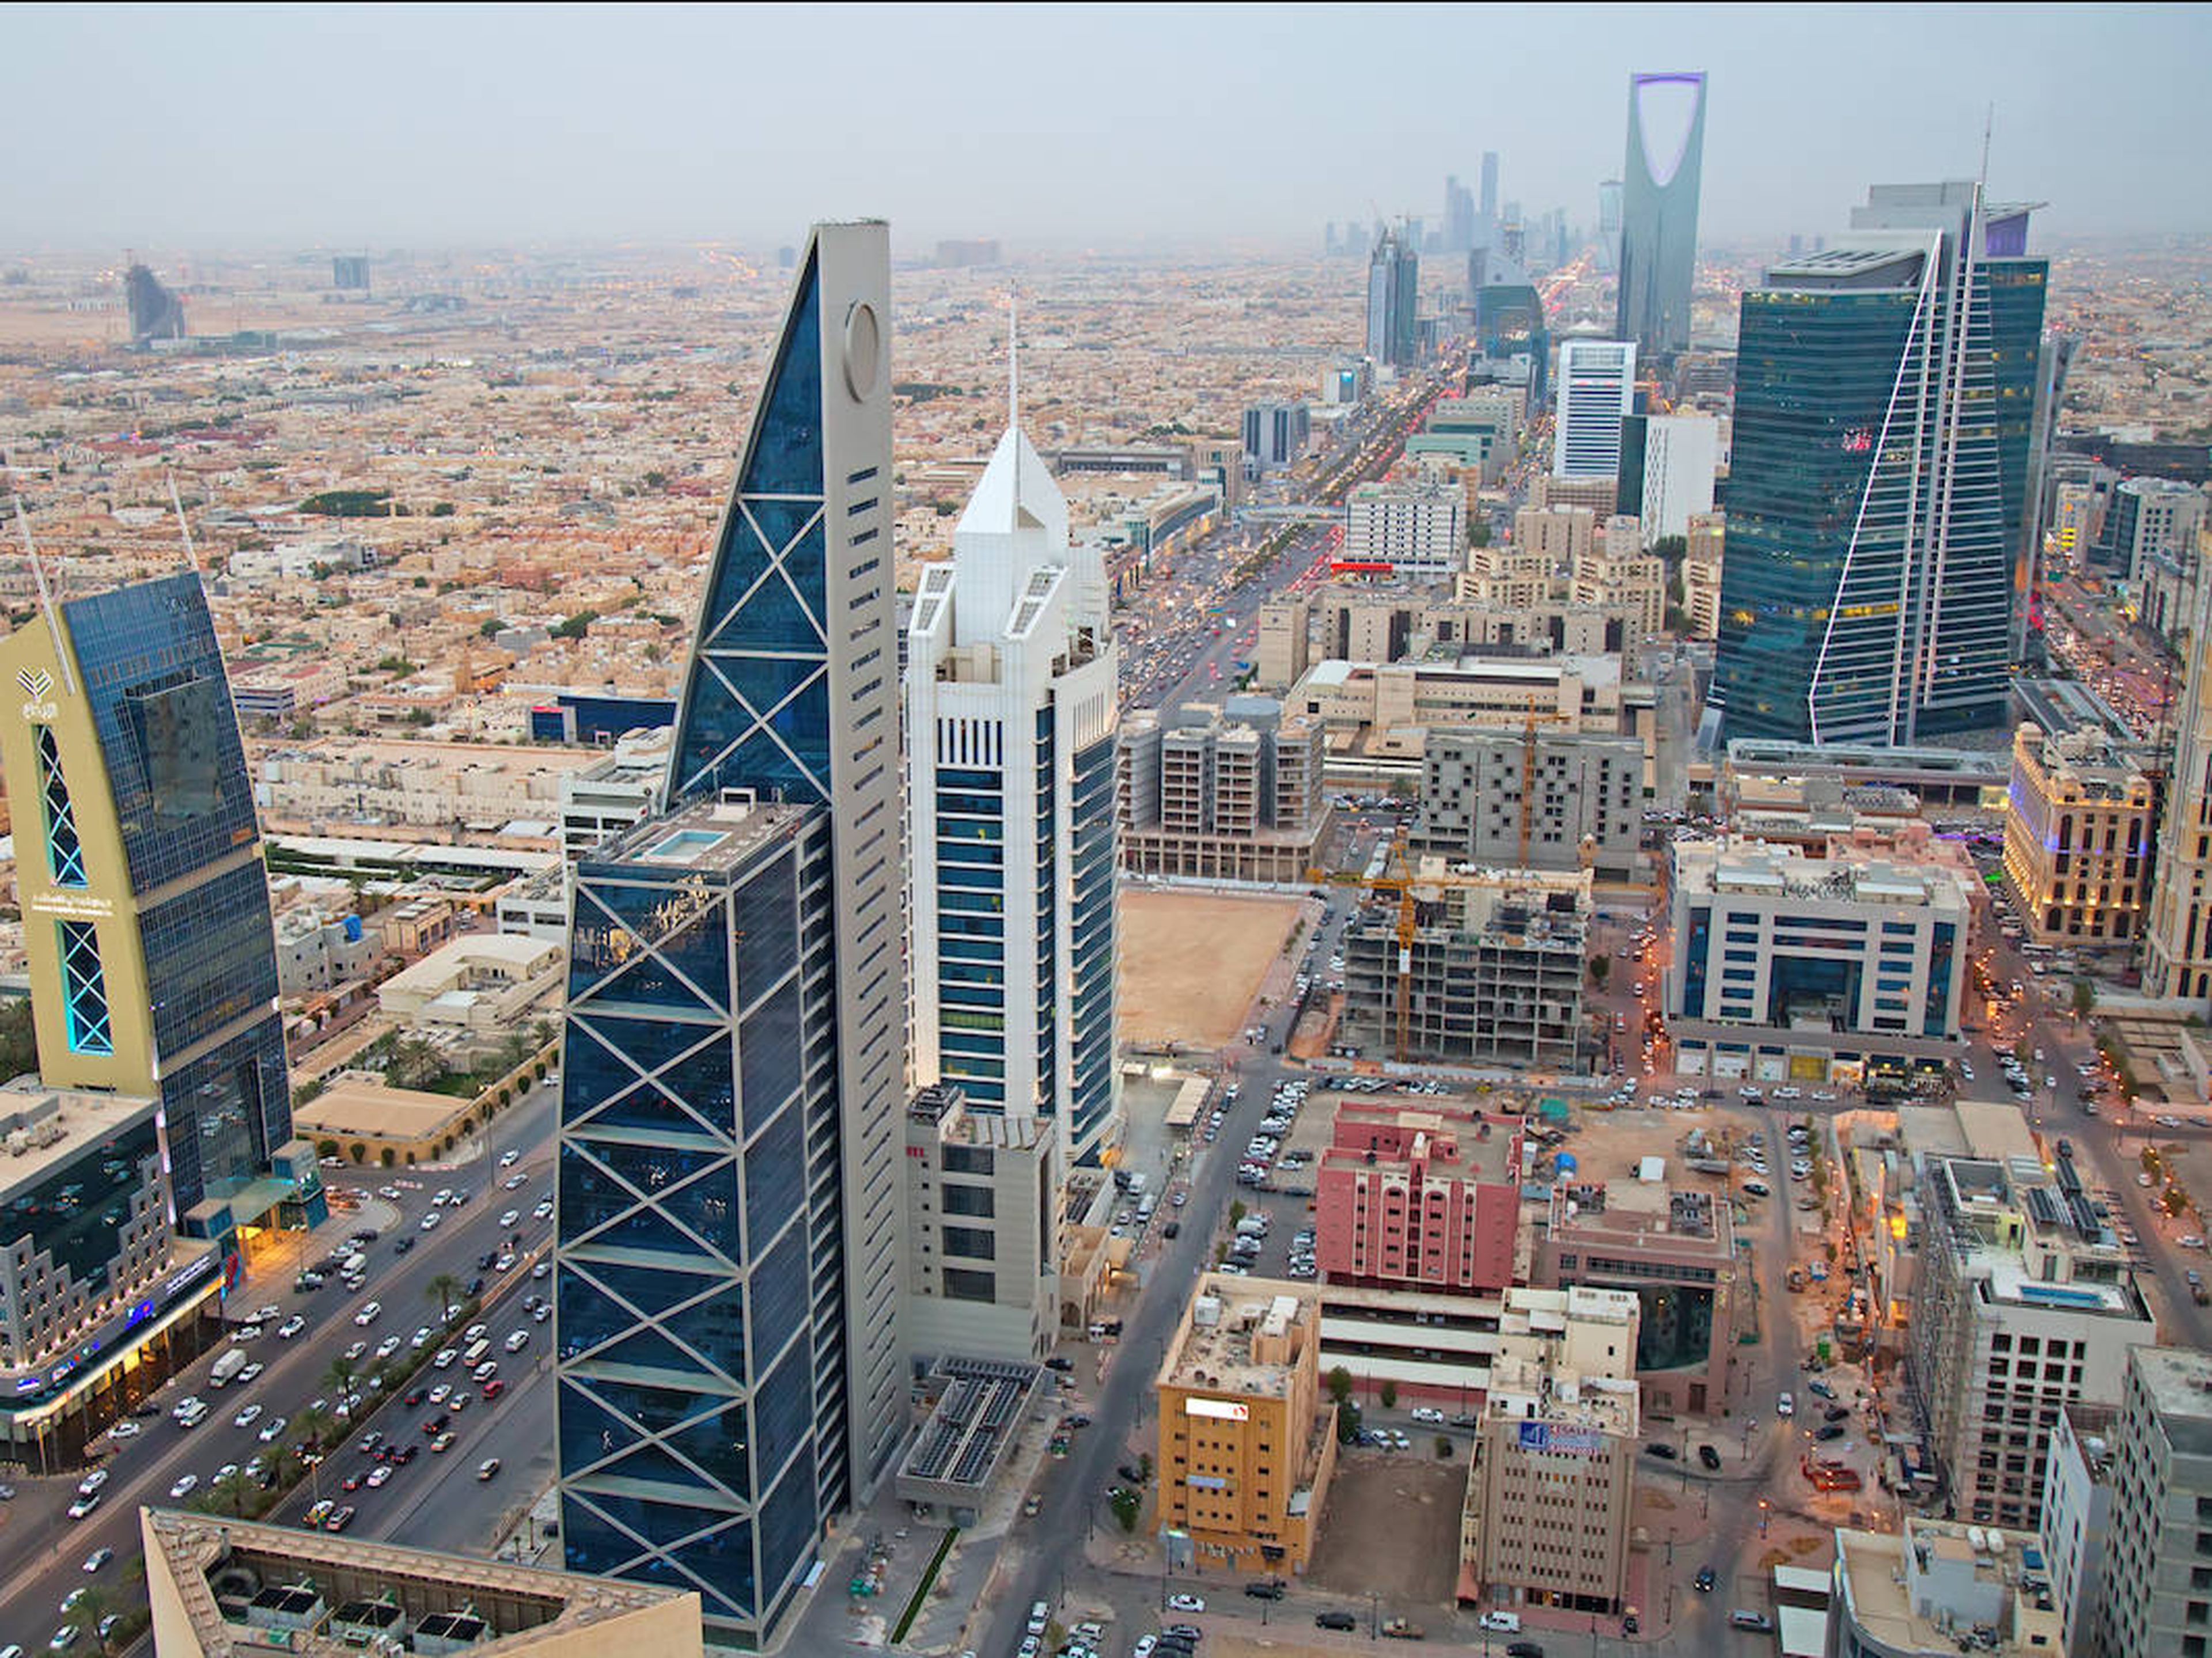 Vista aérea del distrito financiero de Riad (Arabia Saudí) en agosto de 2016.